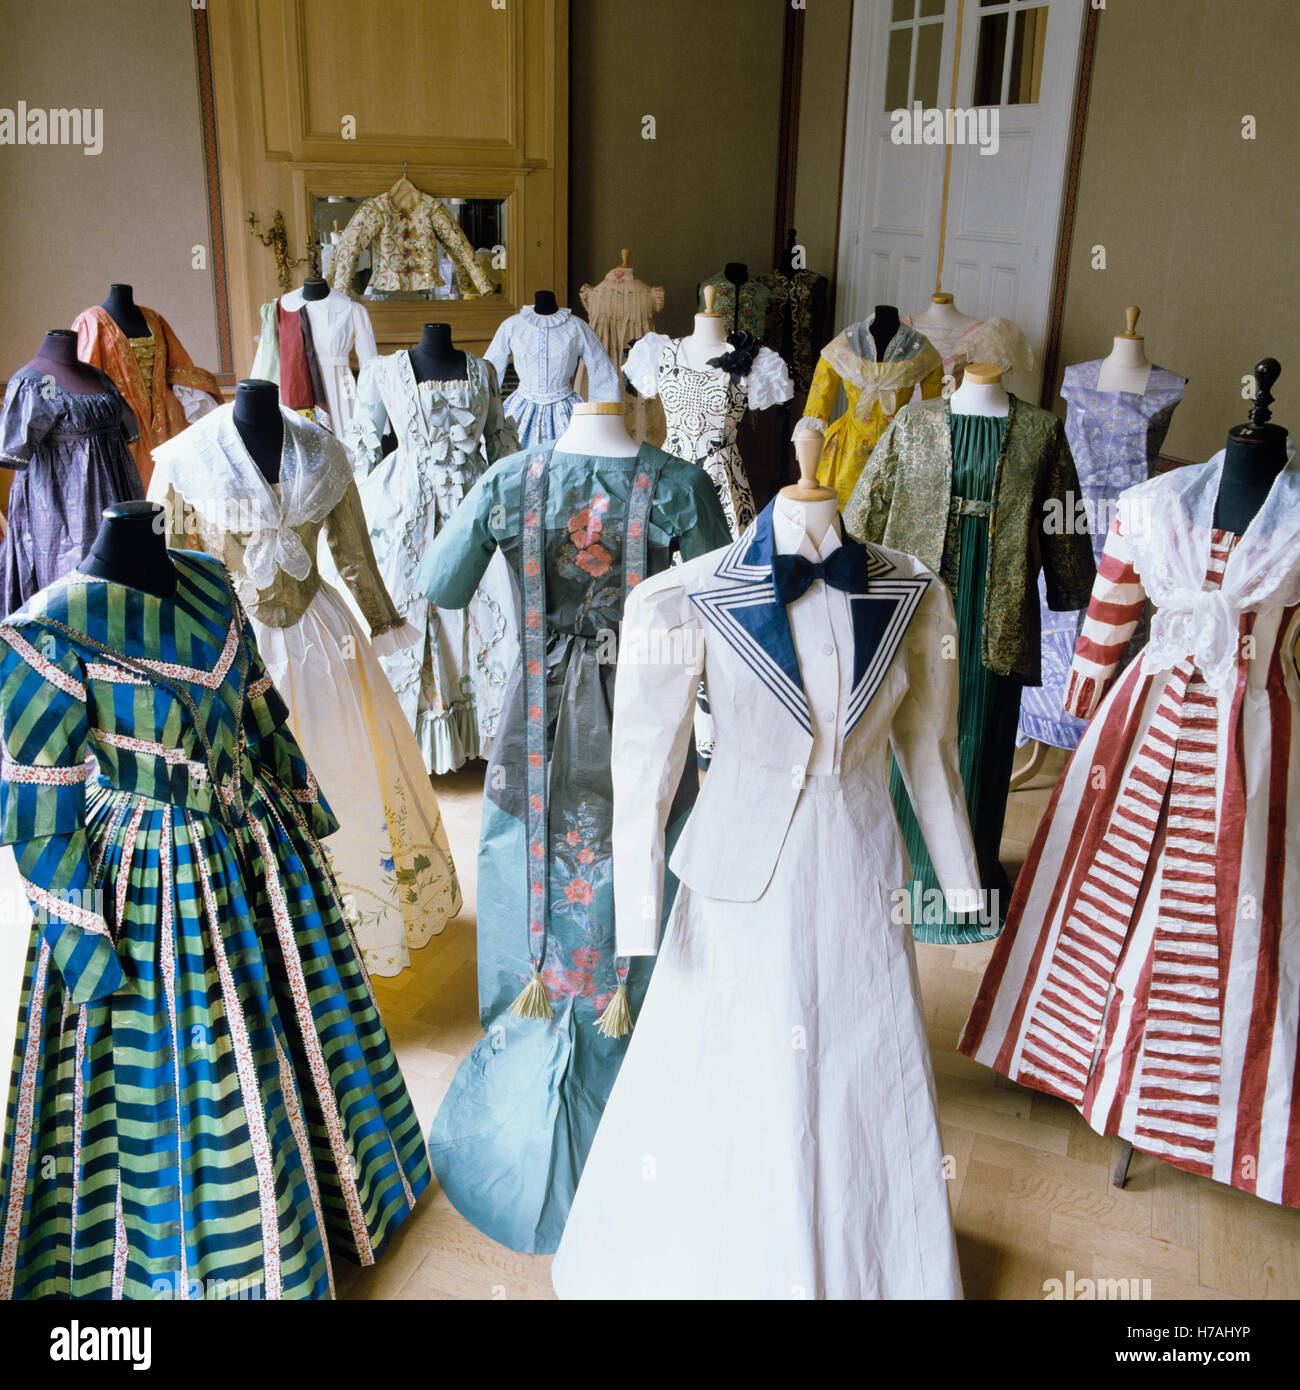 La visualizzazione completa di replica storica abiti di carta di Isabelle de Borchgrave Foto Stock